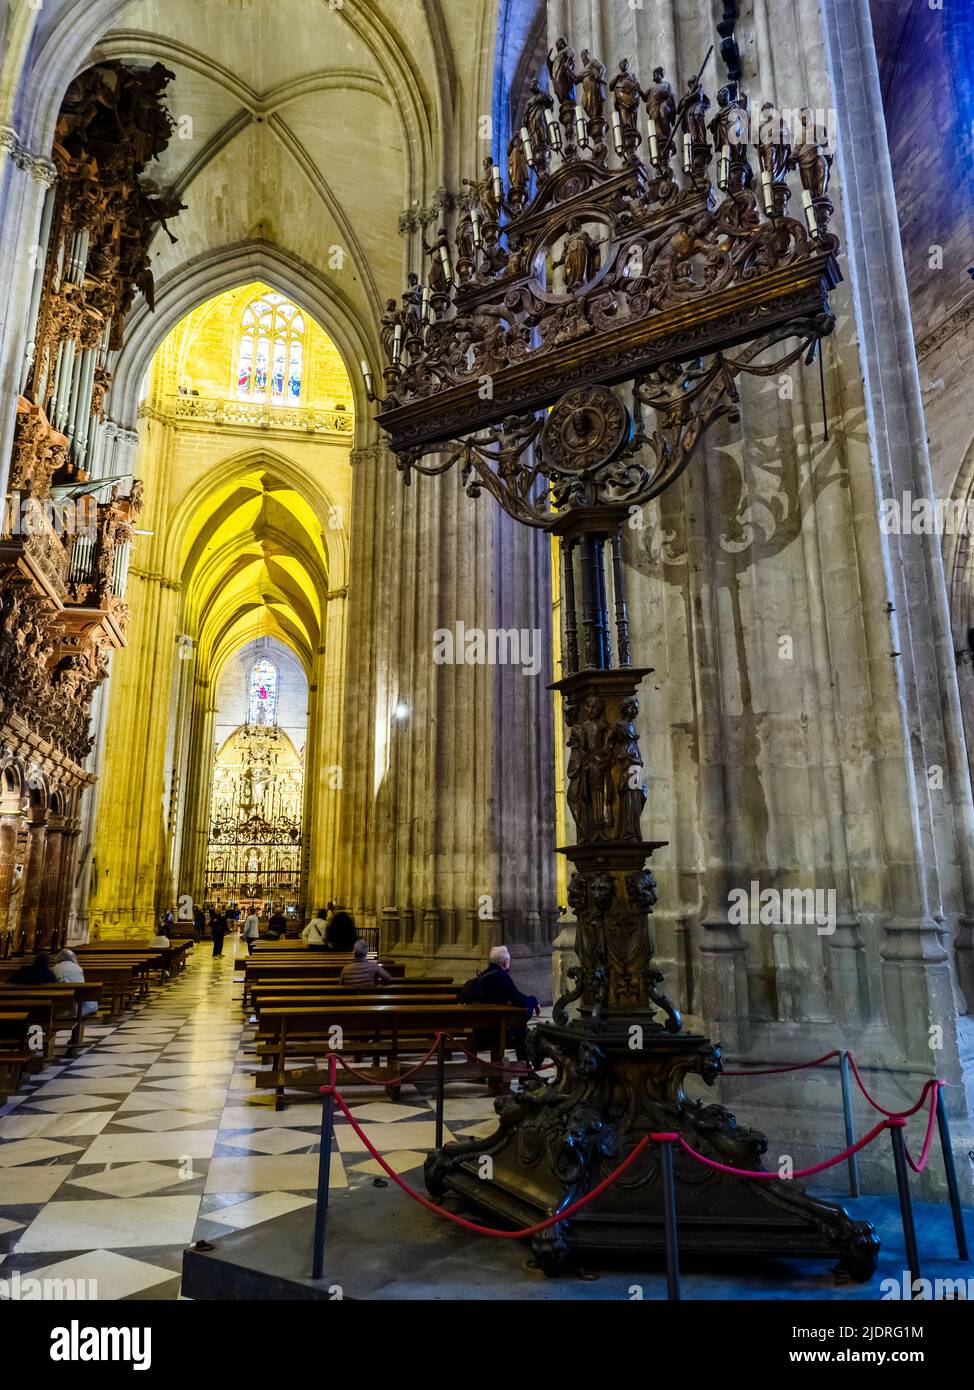 El Candelabro de las Tinieblas (The Chandelier of Darkness) in the Seville Cathedral - Seville, Spain Stock Photo